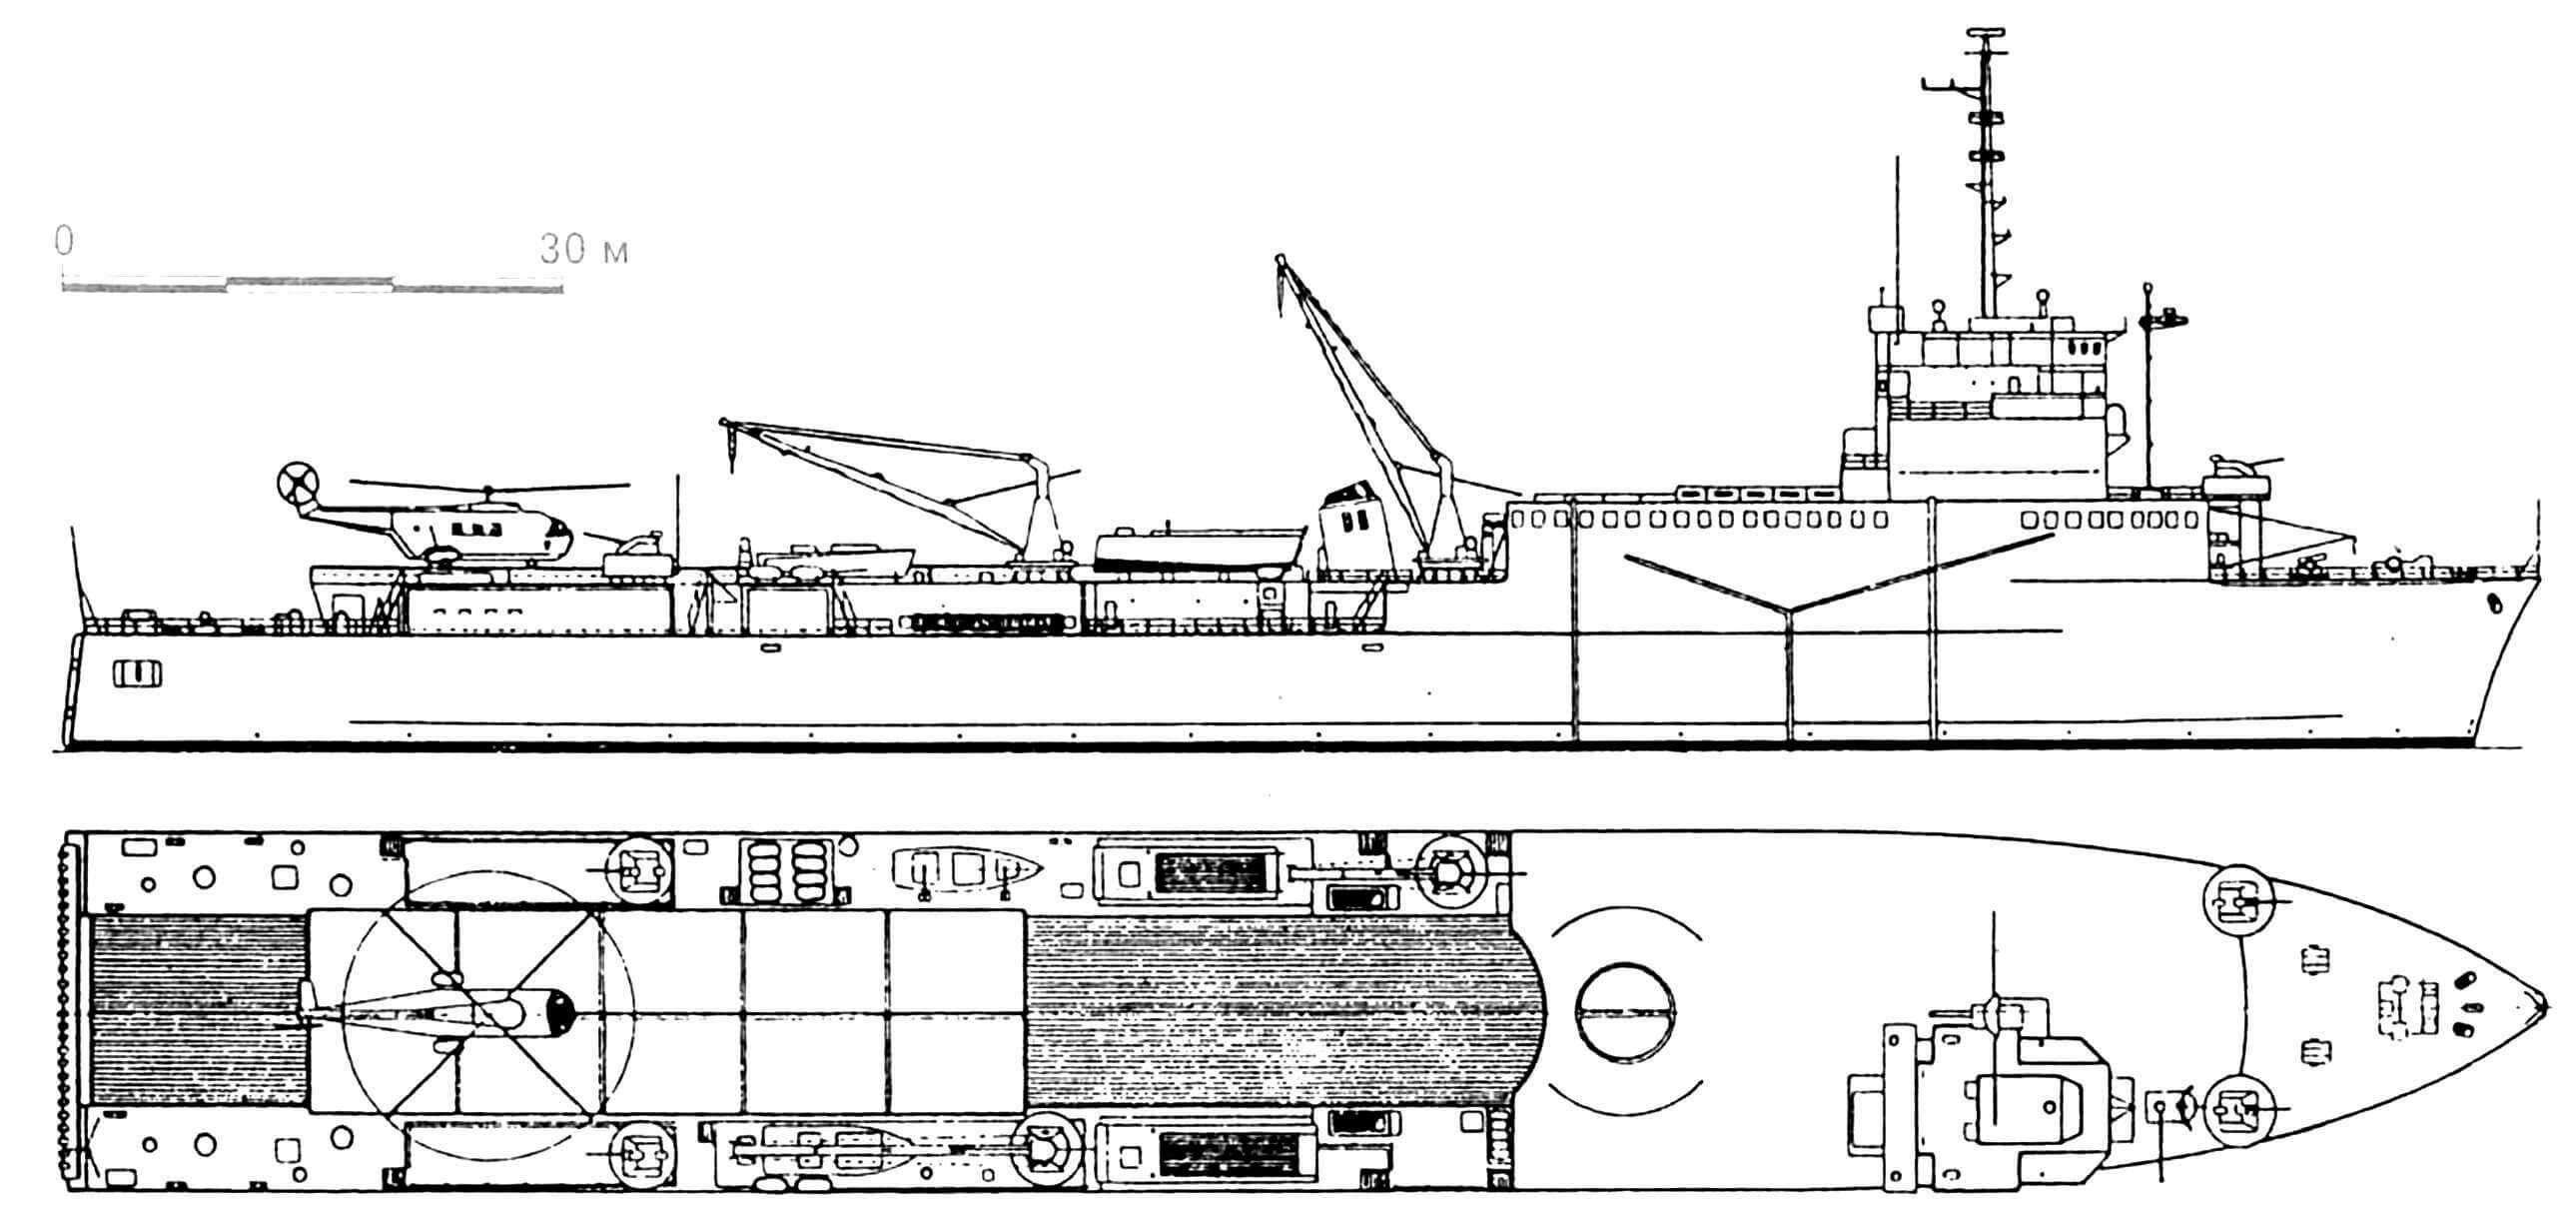 31. Десантный корабль-док «Ураган», Франция, 1963 г. Водоизмещение стандартное 5800 т, полное 8500 т. Длина 149,0 м, ширина 21,5 м, осадка 4,6 м. Дизели общей мощностью 8600 л.с., скорость 17 узлов. Вооружение: четыре 40-мм автомата. Построены два корабля этого типа: «Ураган» (1963 г.) и «Ораж» (1967 г.)